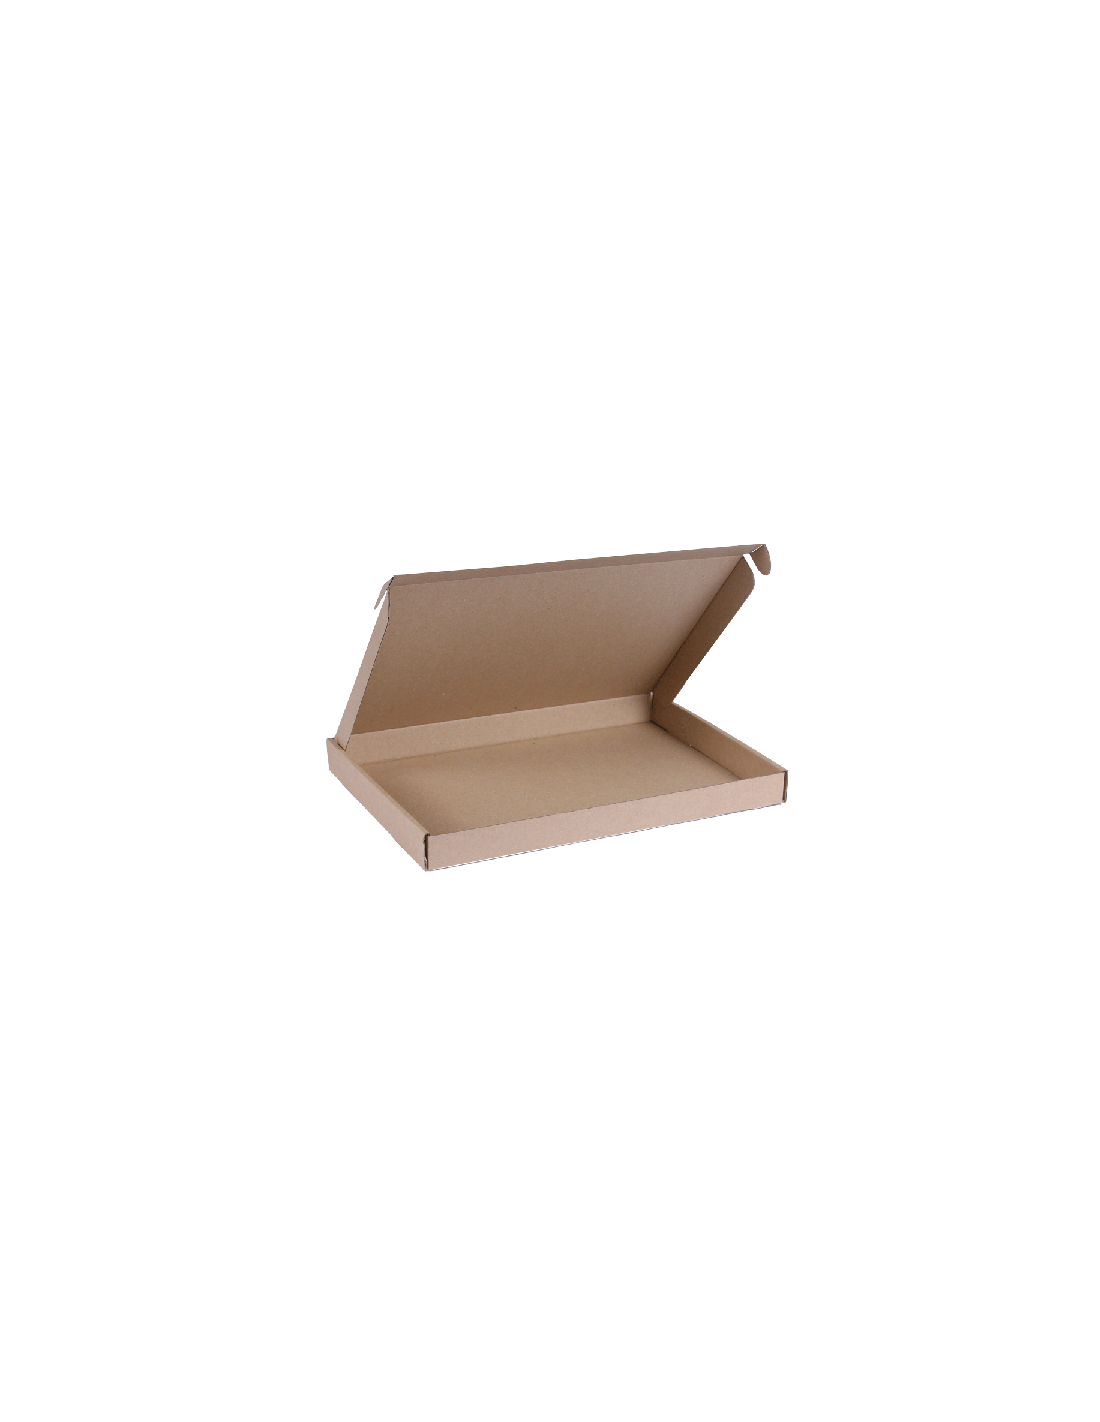 Boîte postale en carton - Boite carton brune